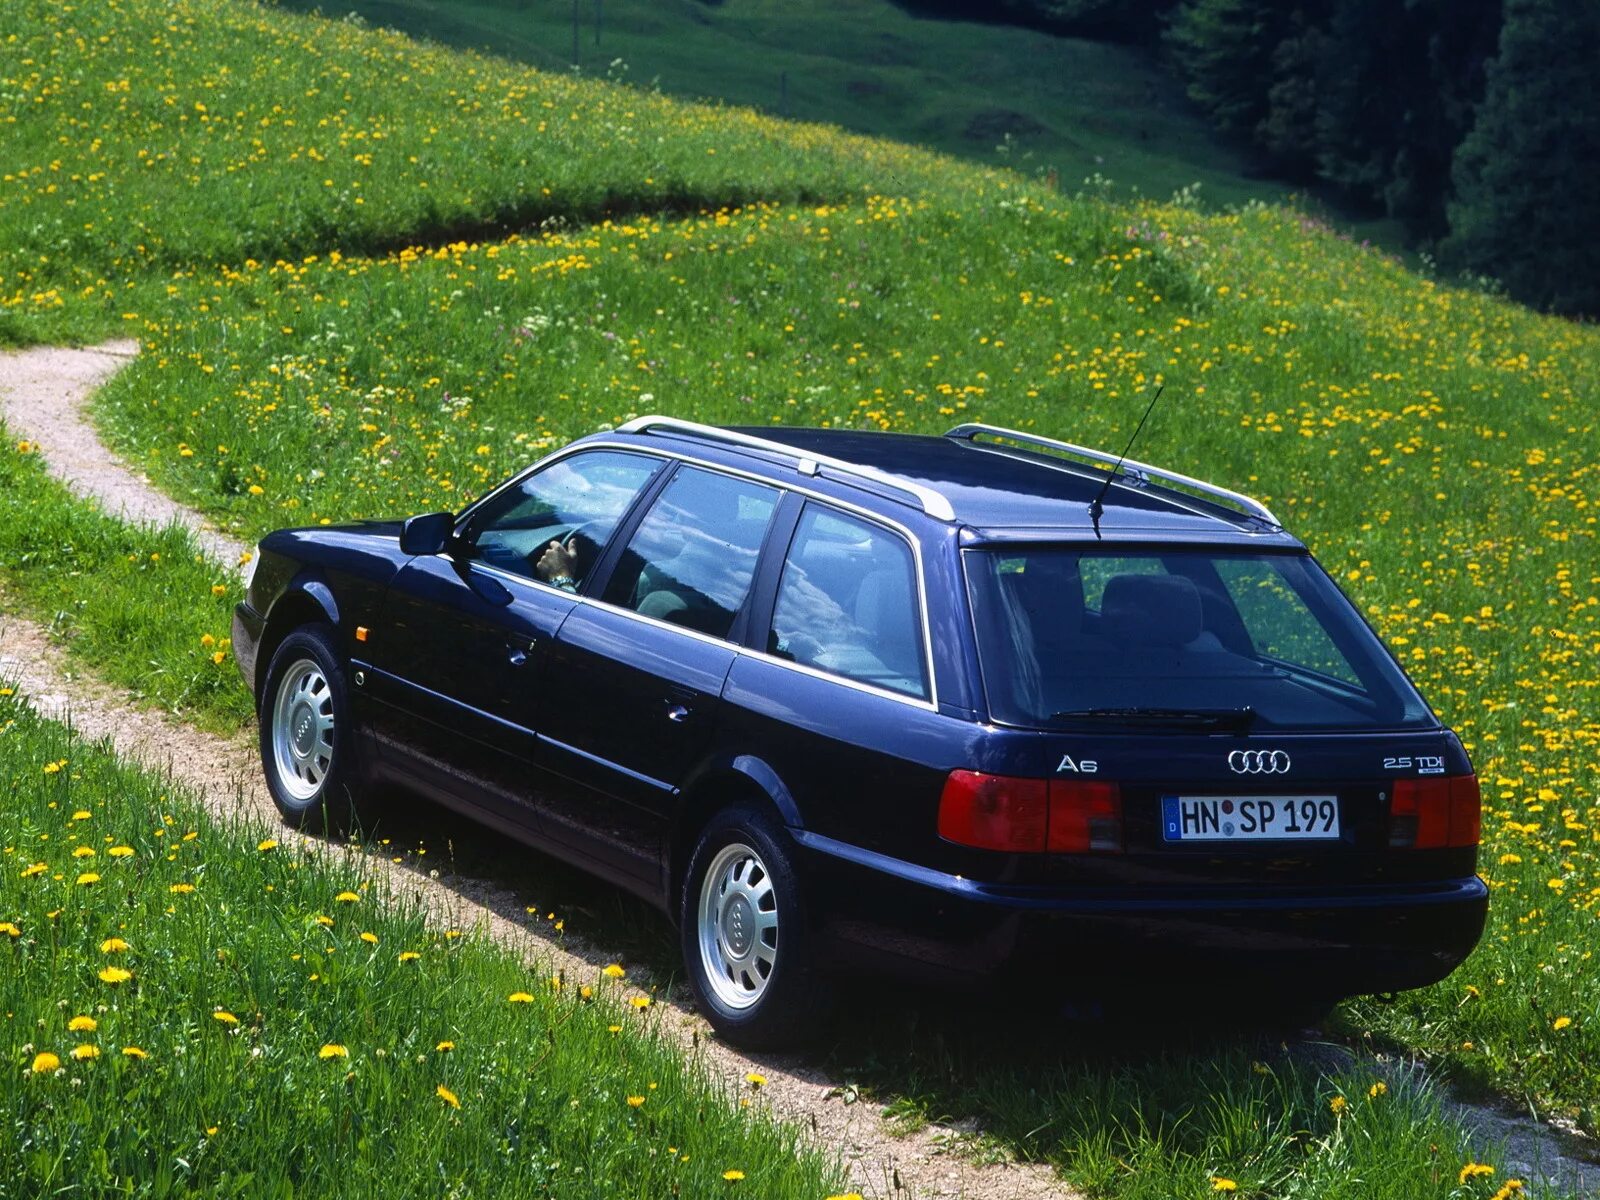 А6 ц4. Audi a6 универсал 1995. Audi a6 c4 Авант. Audi a6 1996 универсал. Audi a6 c4 1996 универсал.